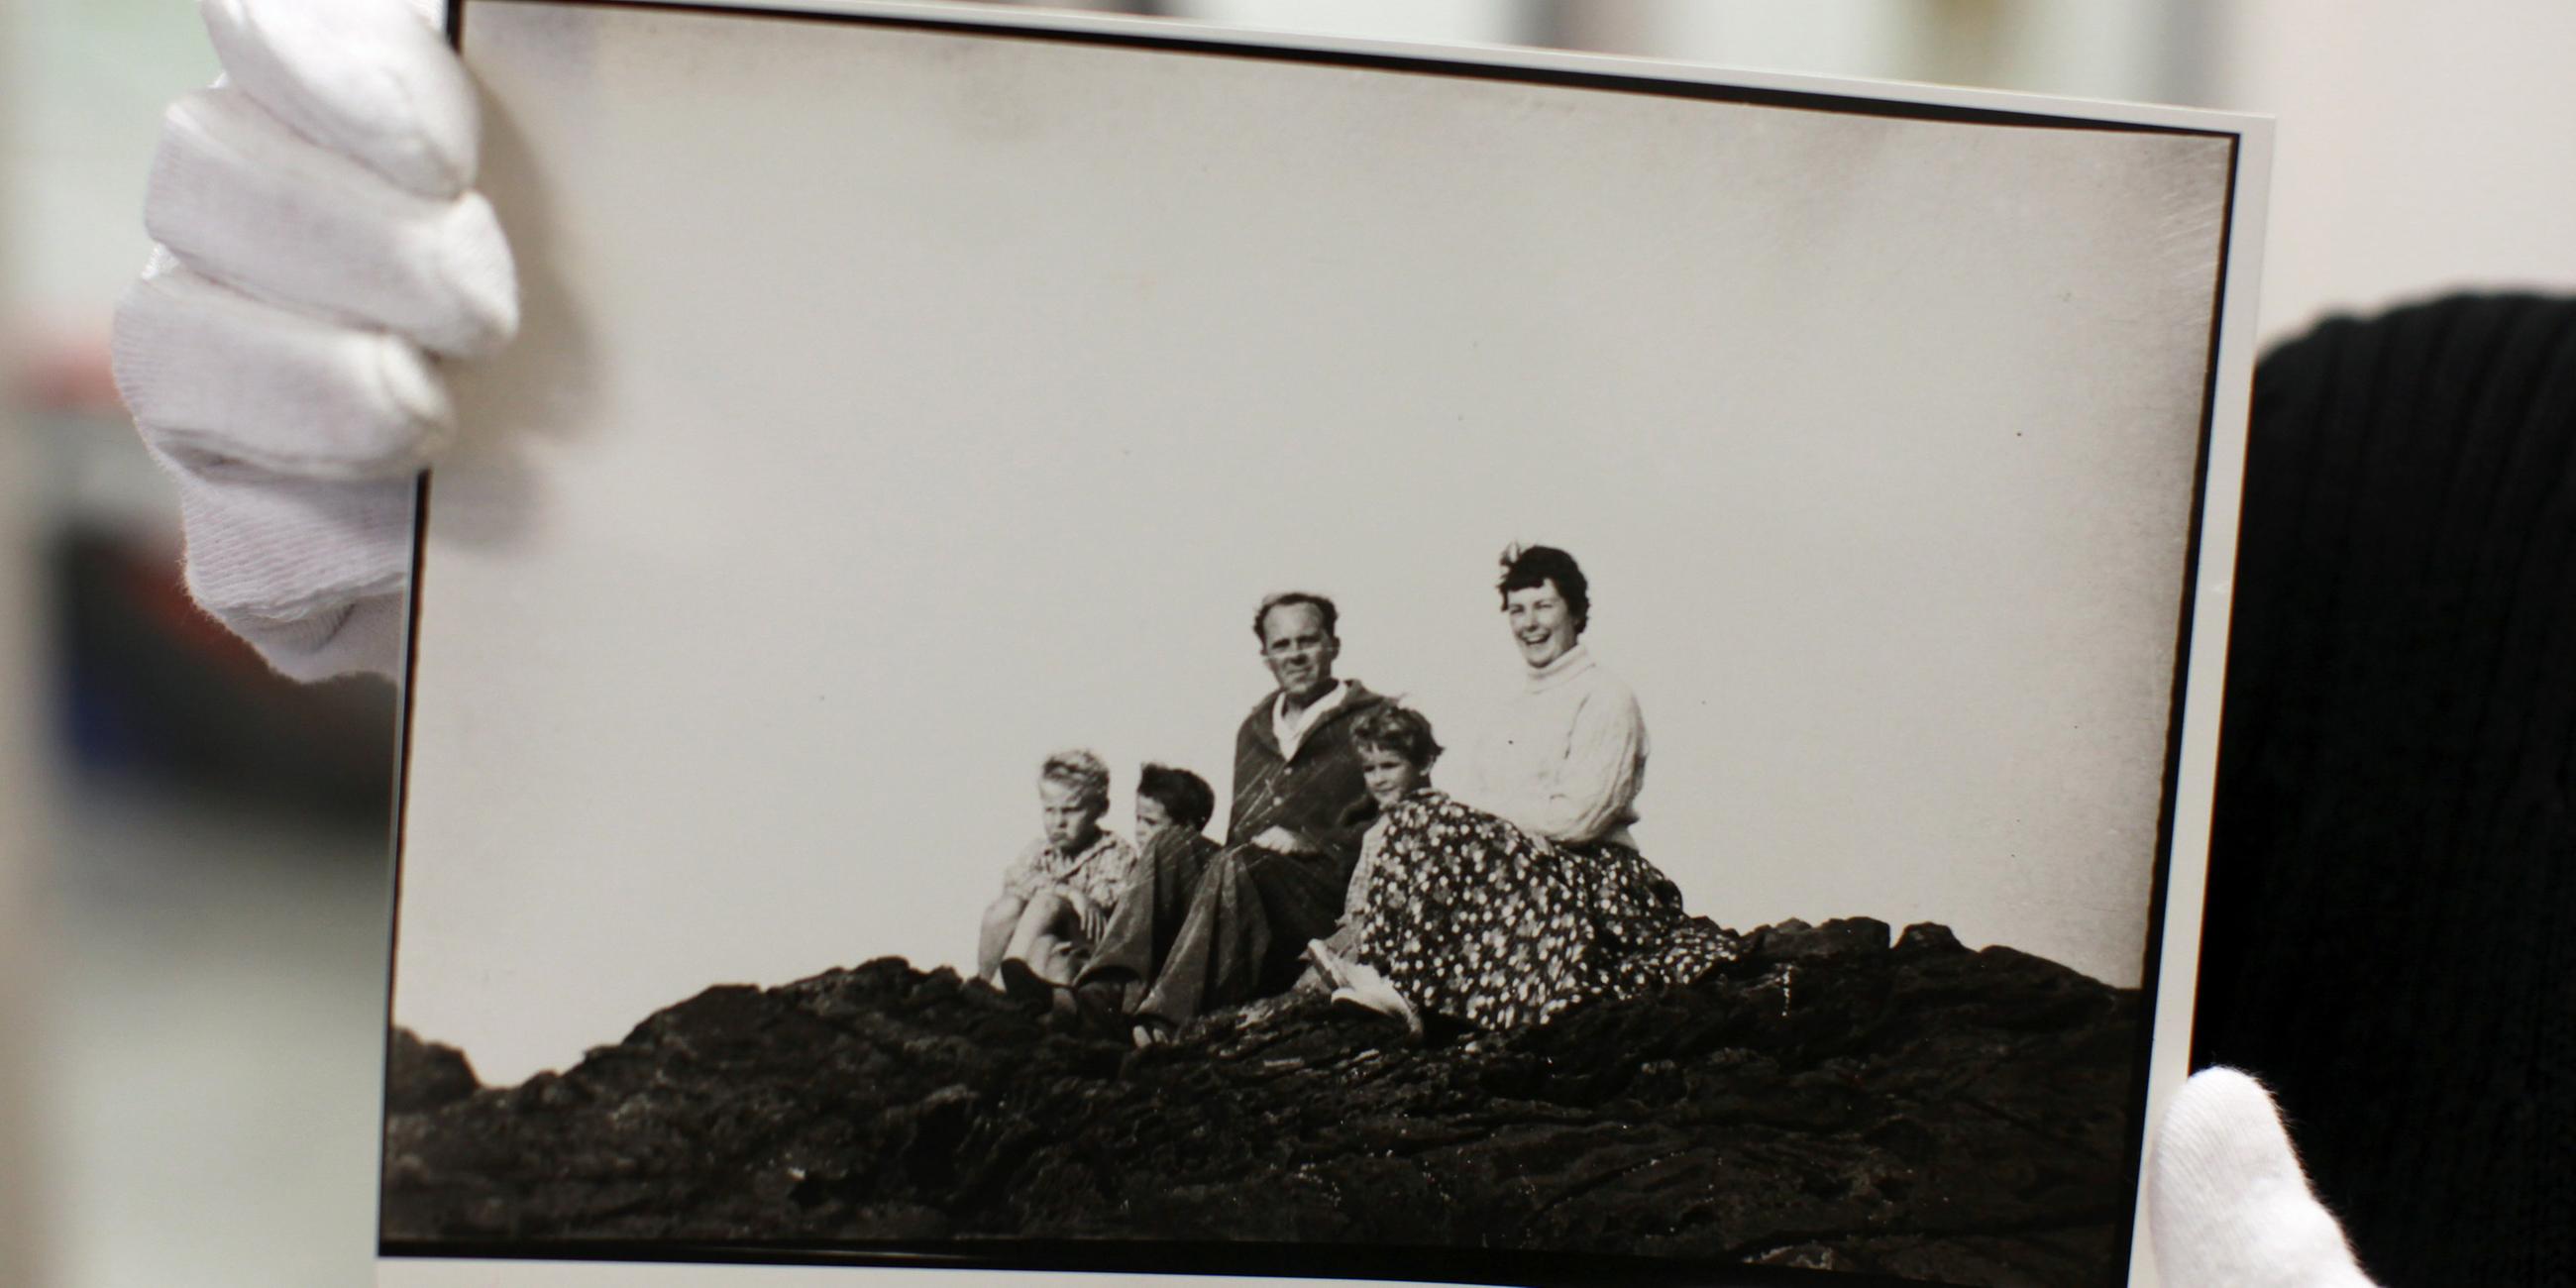 Familienbild von Heinrich Böll aus dem Jahr 1958, aufgenommen in Irland.